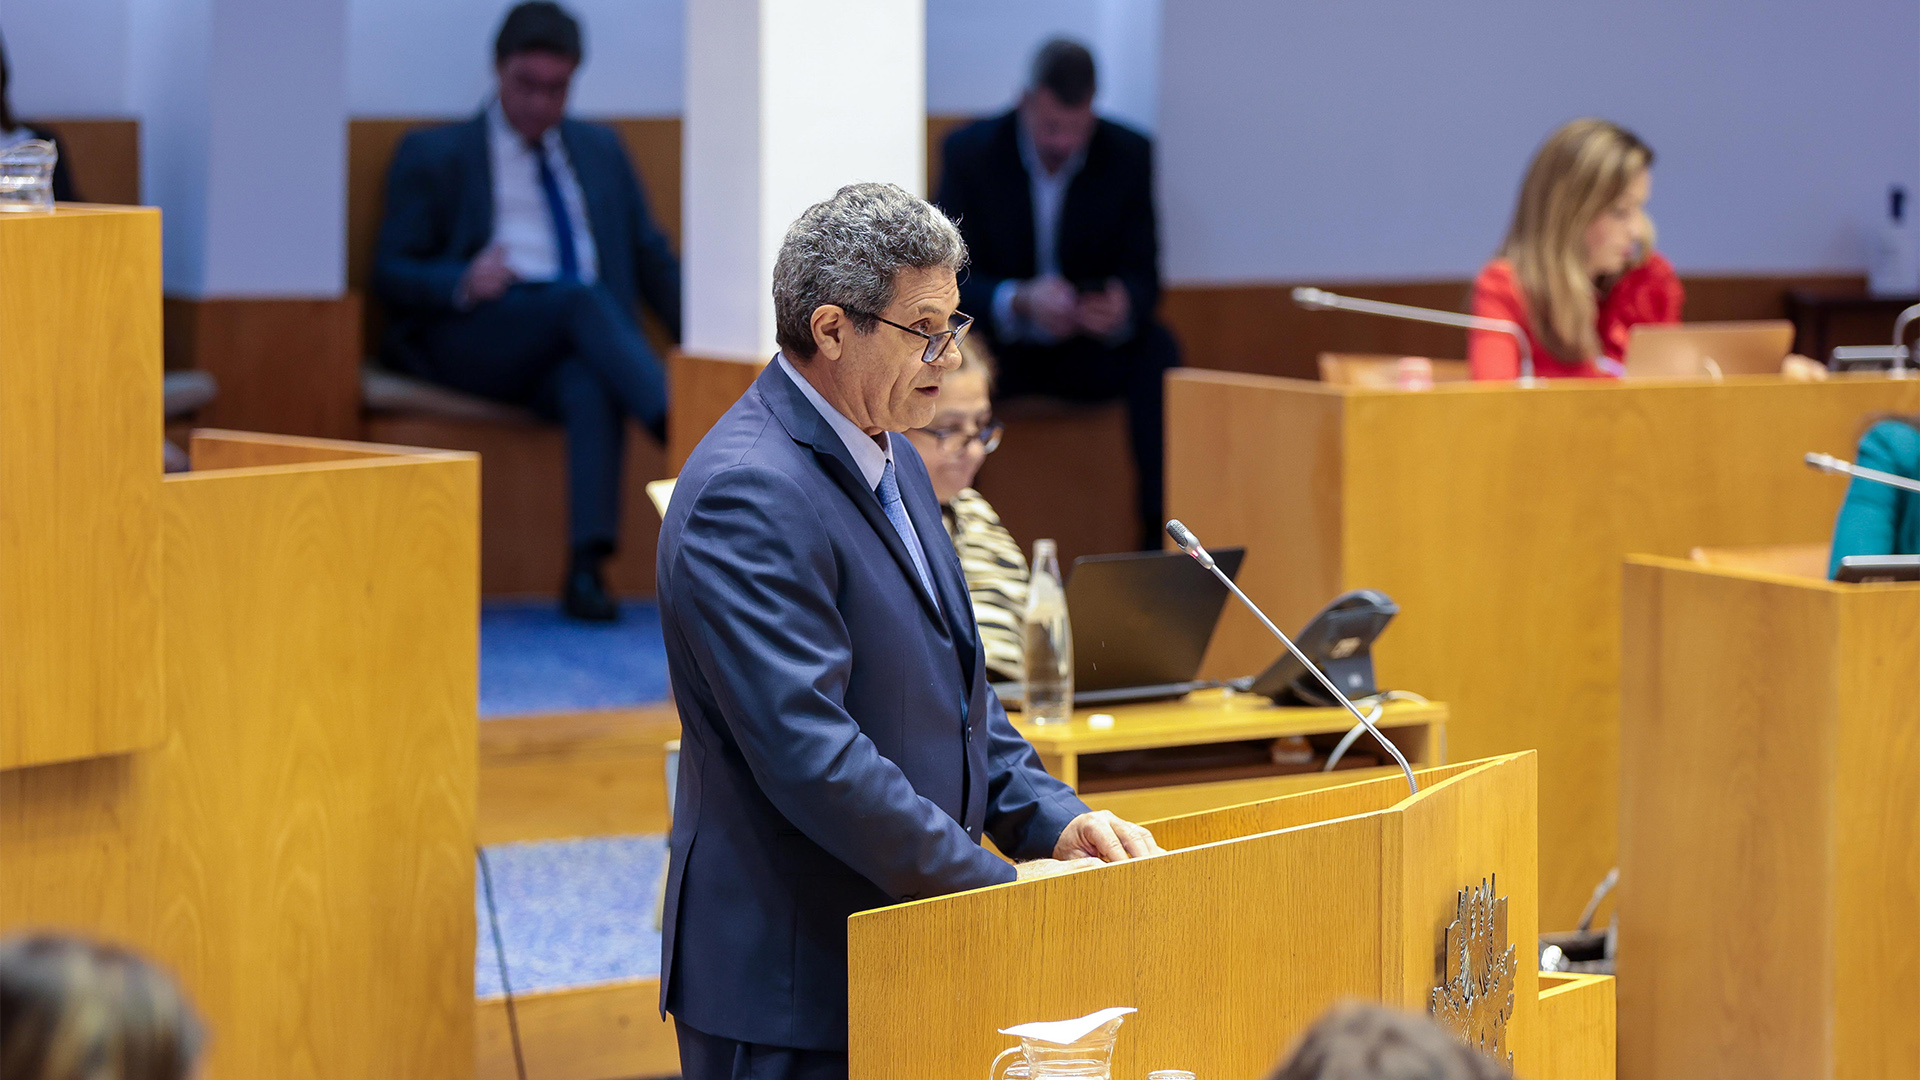 Mar confere “considerável posição estratégica e afirmação geopolítica” aos Açores, valoriza Mário Rui Pinho